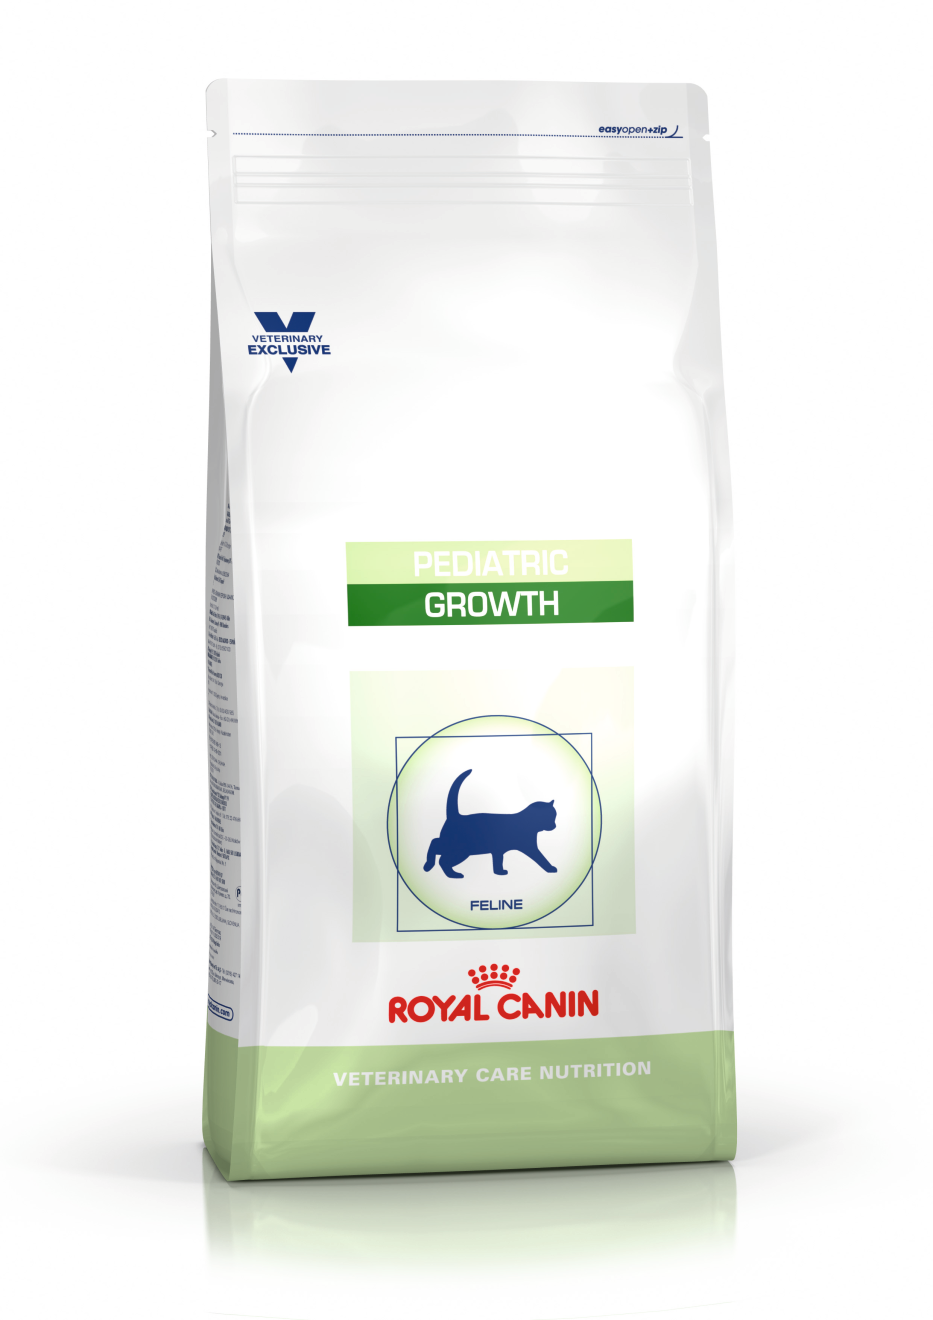 Growth | Royal Canin